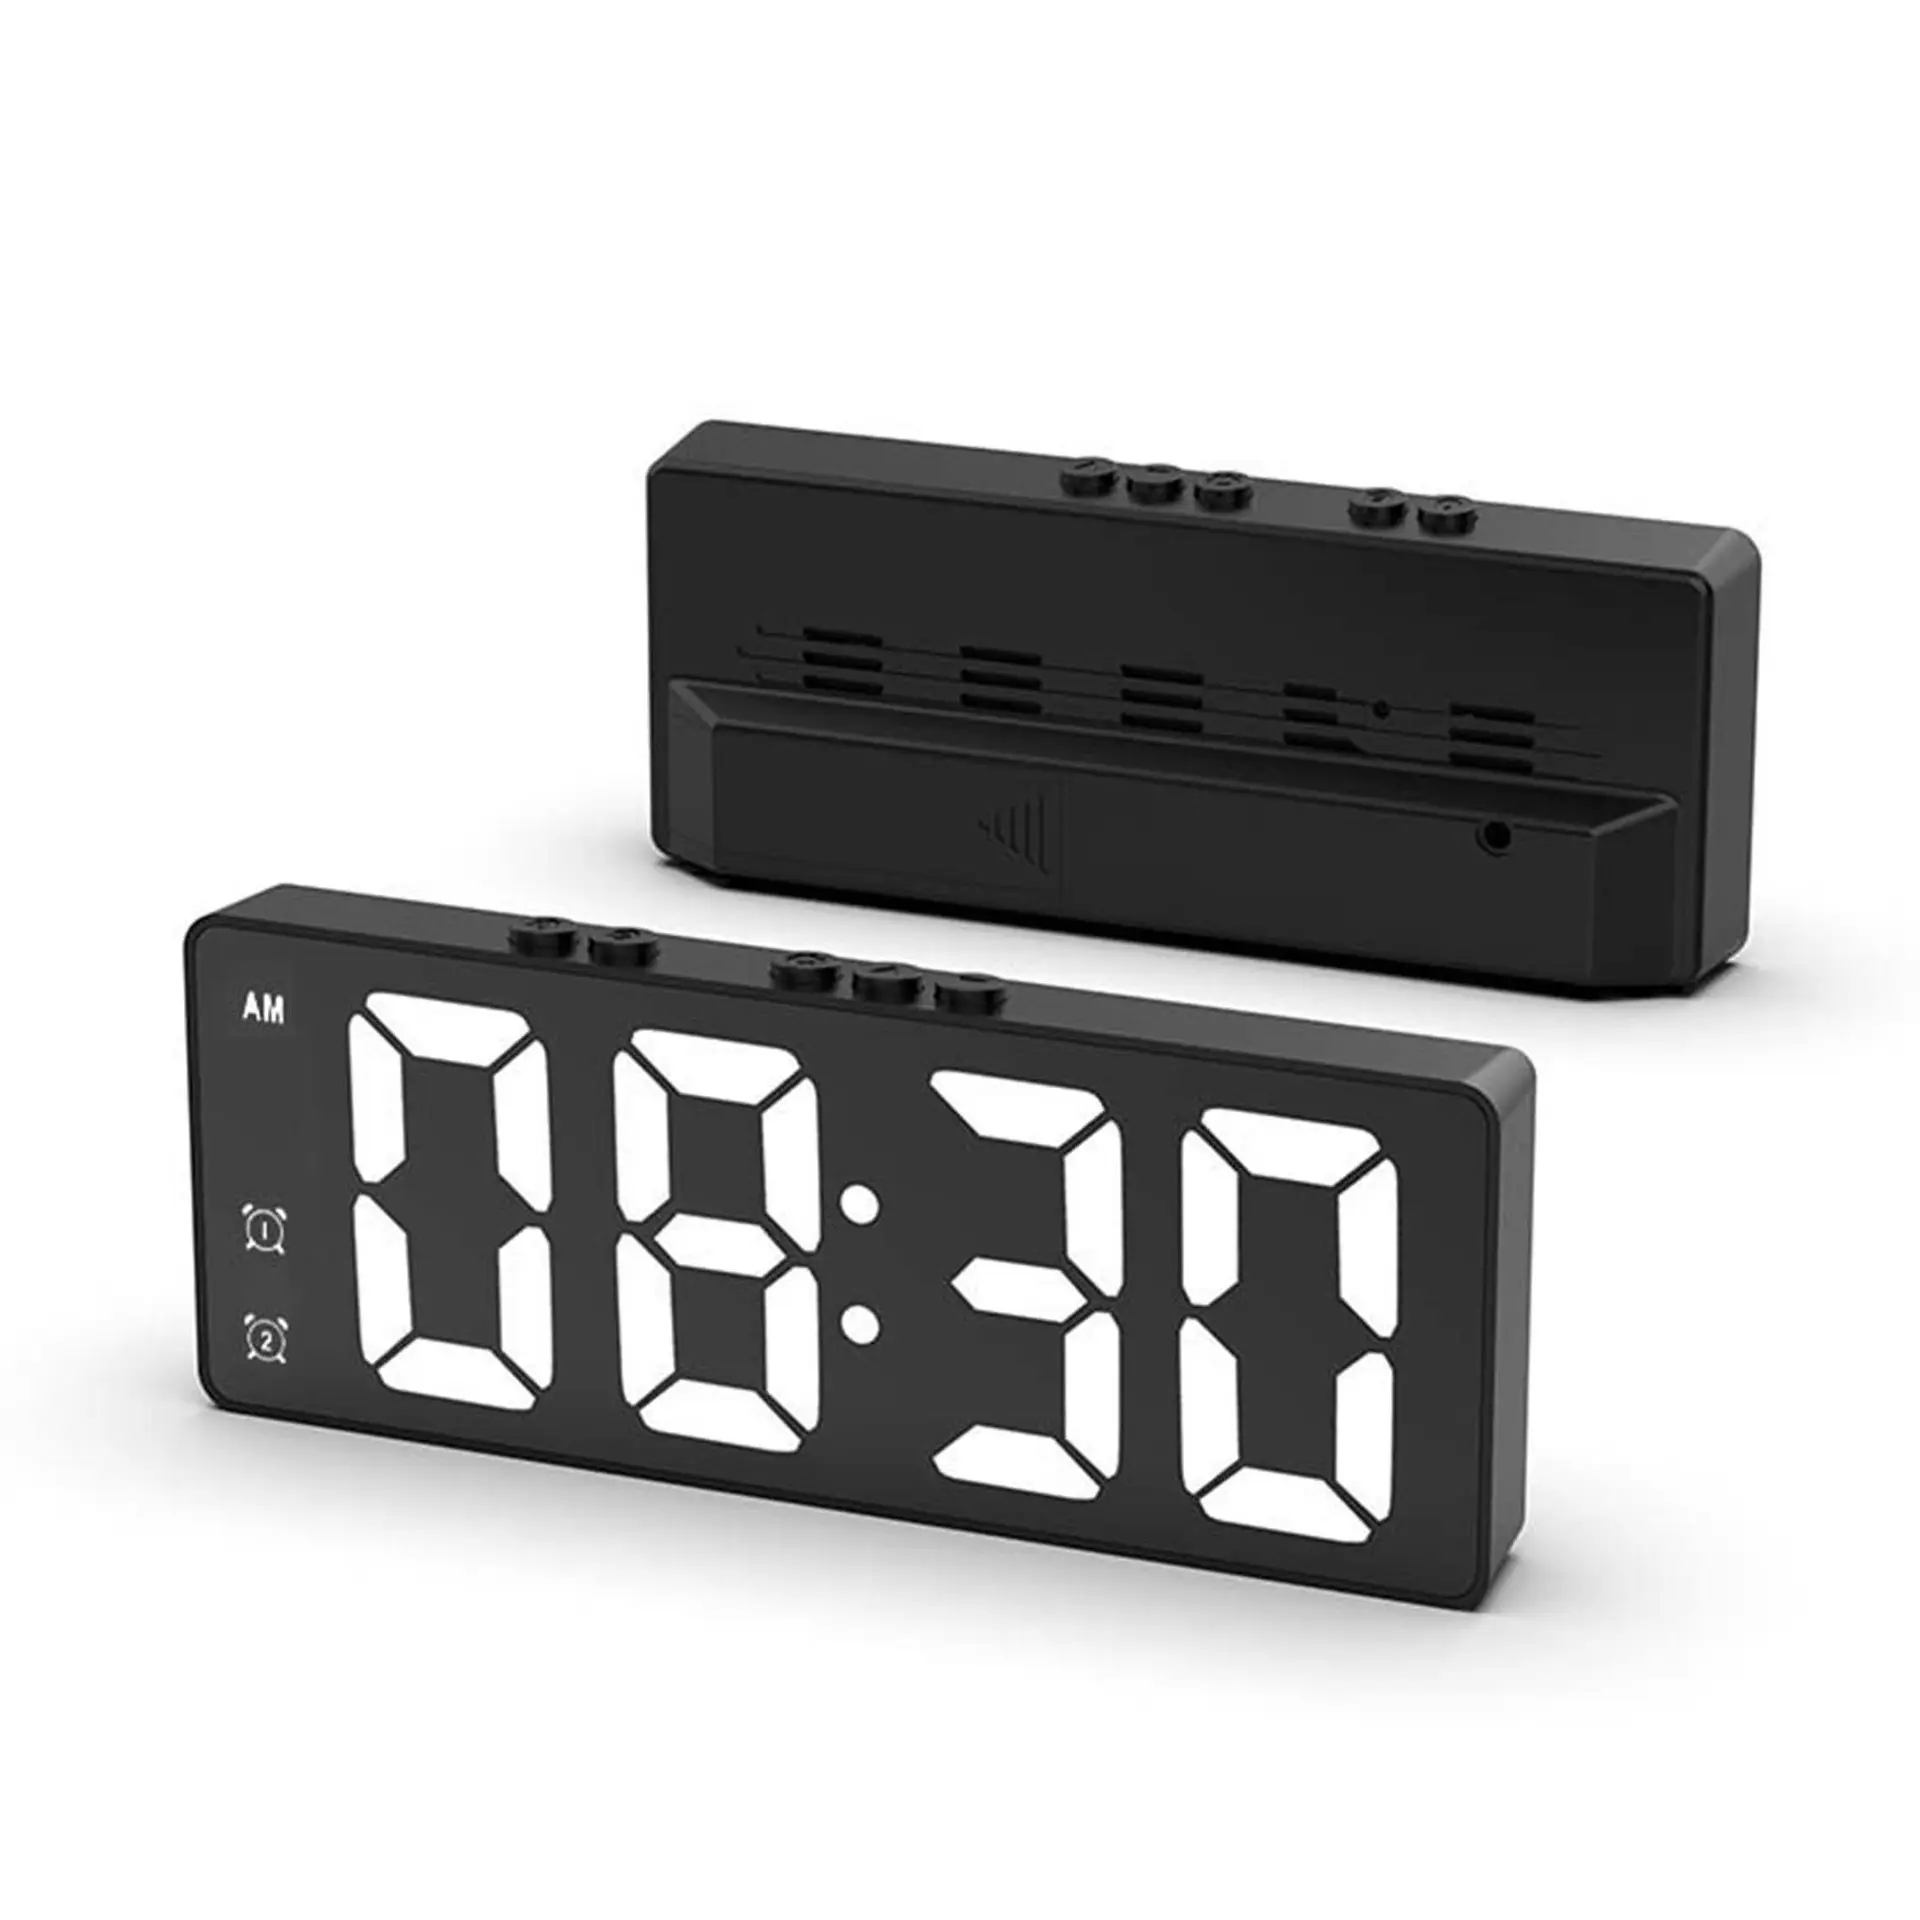 1024SY Rechargeable/Batterie/Câble Alimenté Despertador Horloge Horloges Numériques Led 3D Portable Horloge